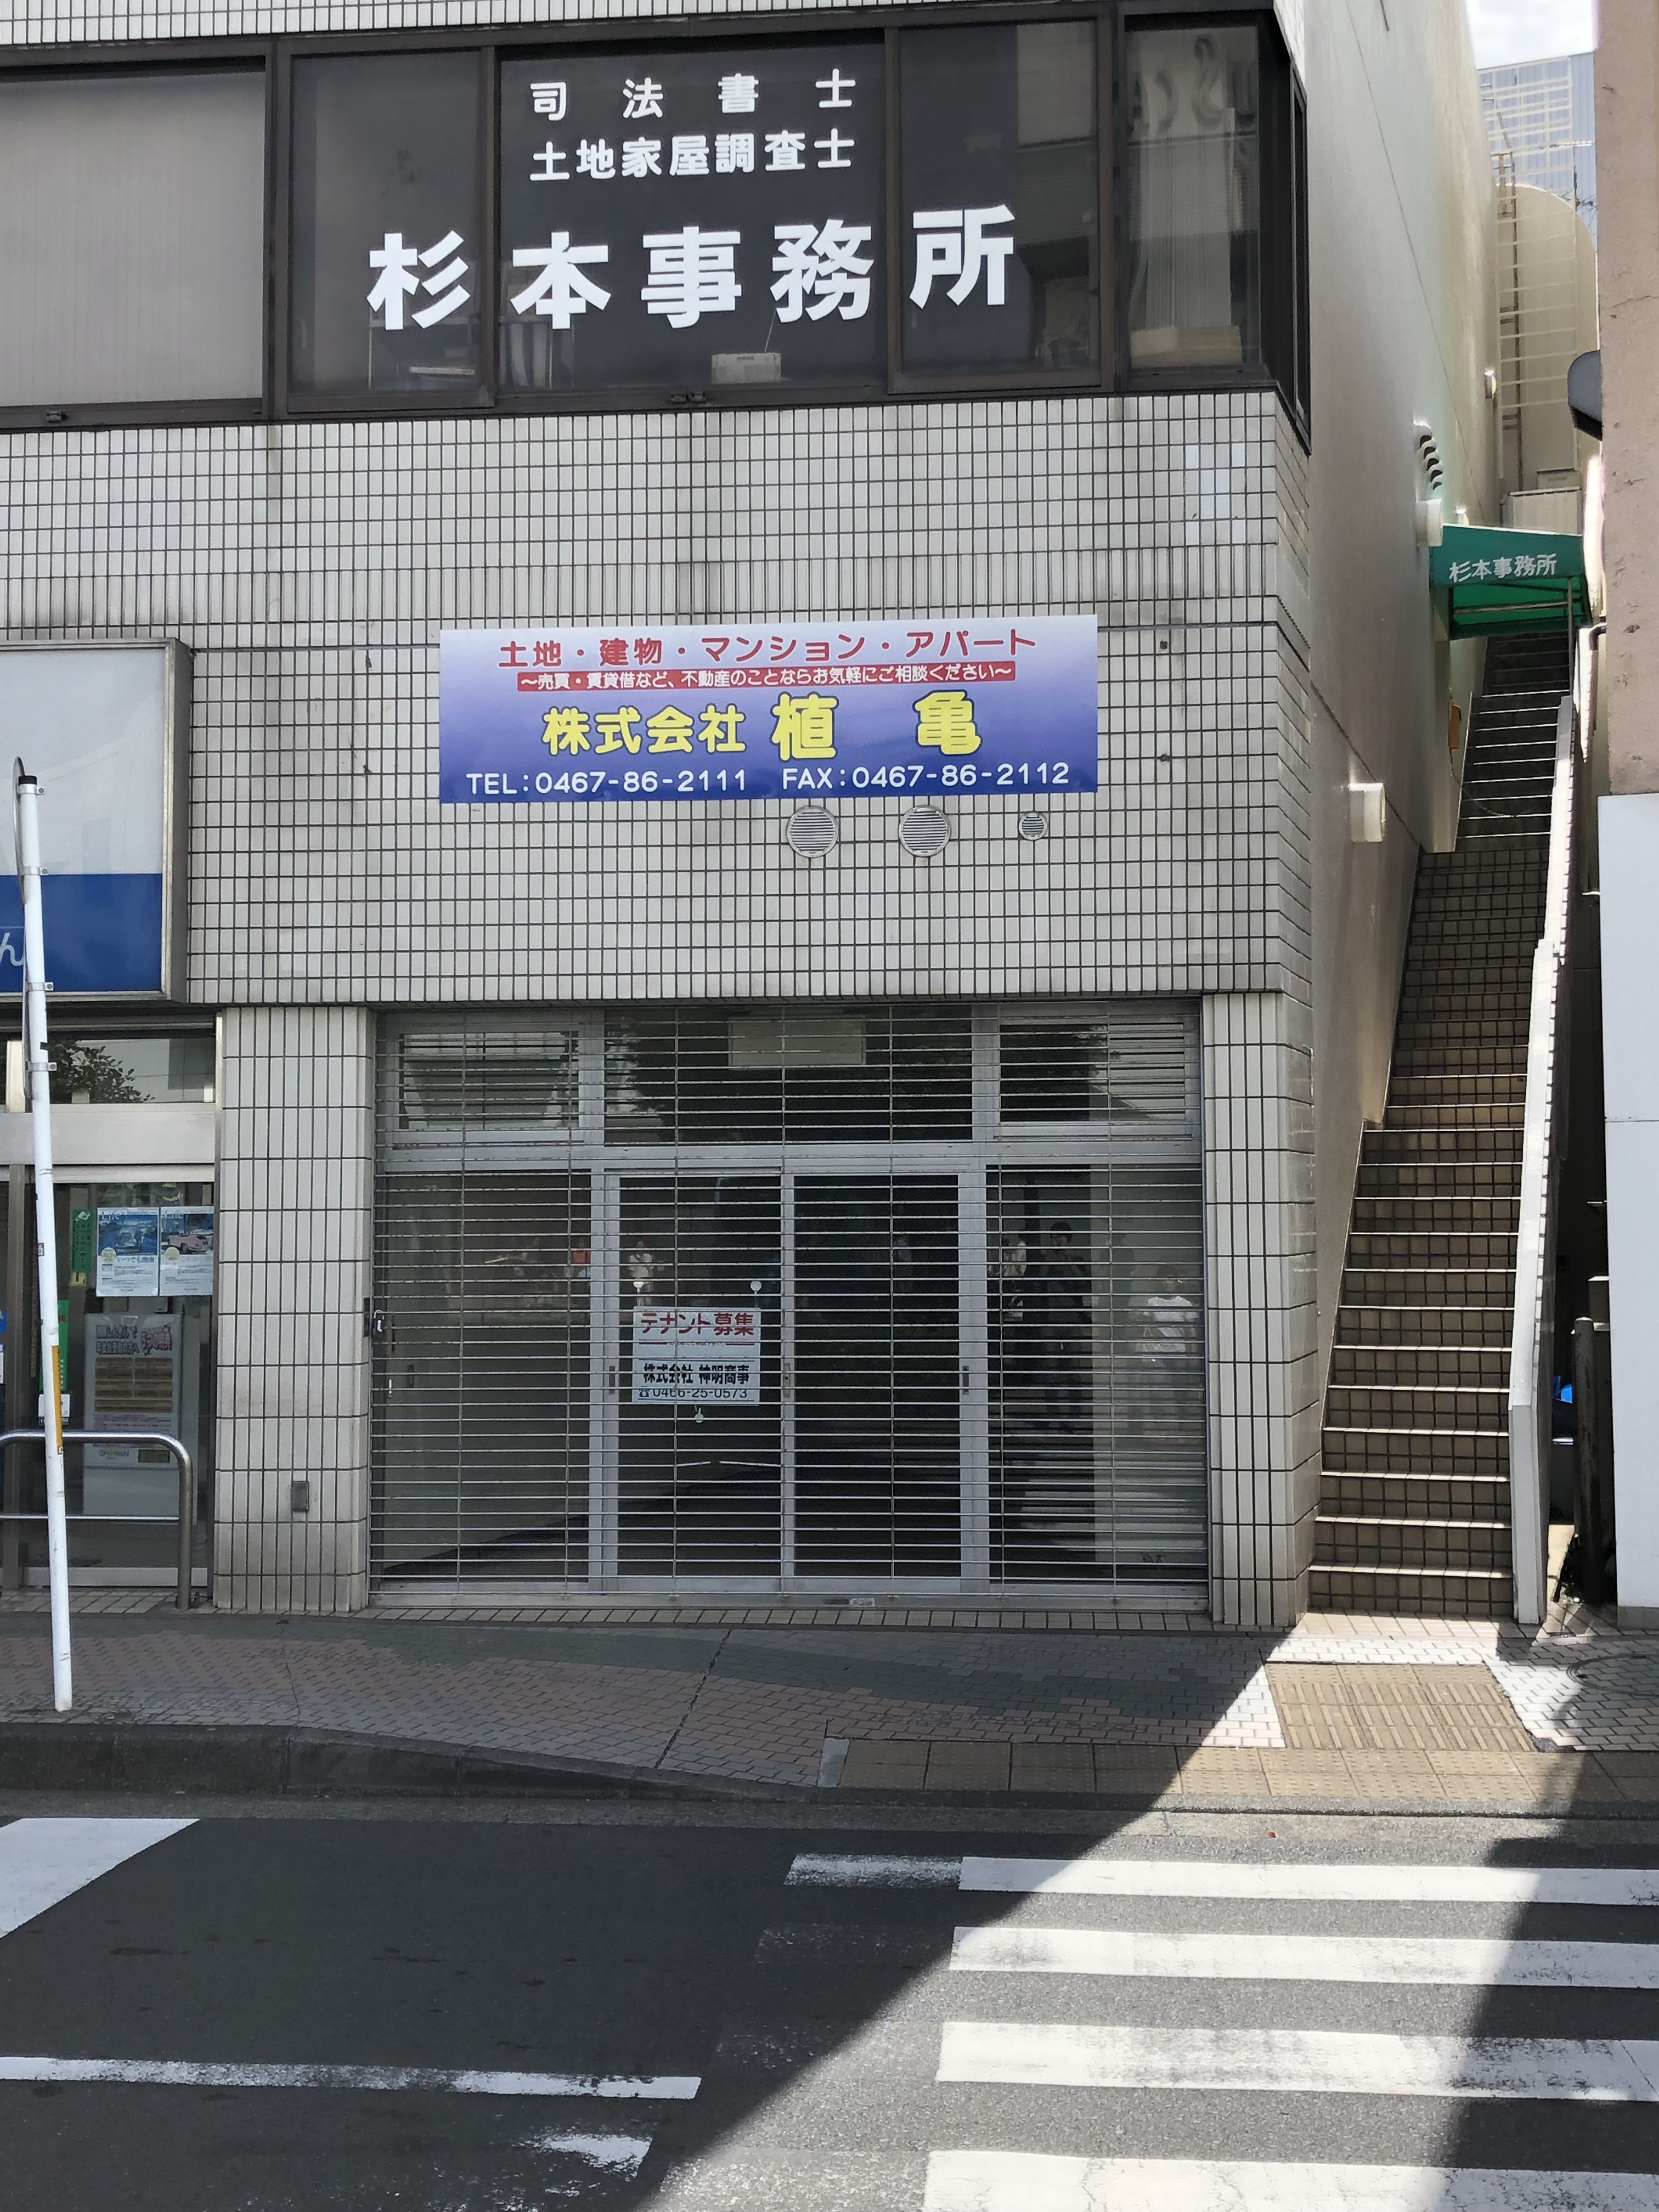 茅ヶ崎駅南口の湘南しんきんが入っているビル、1Fがテナント募集している。